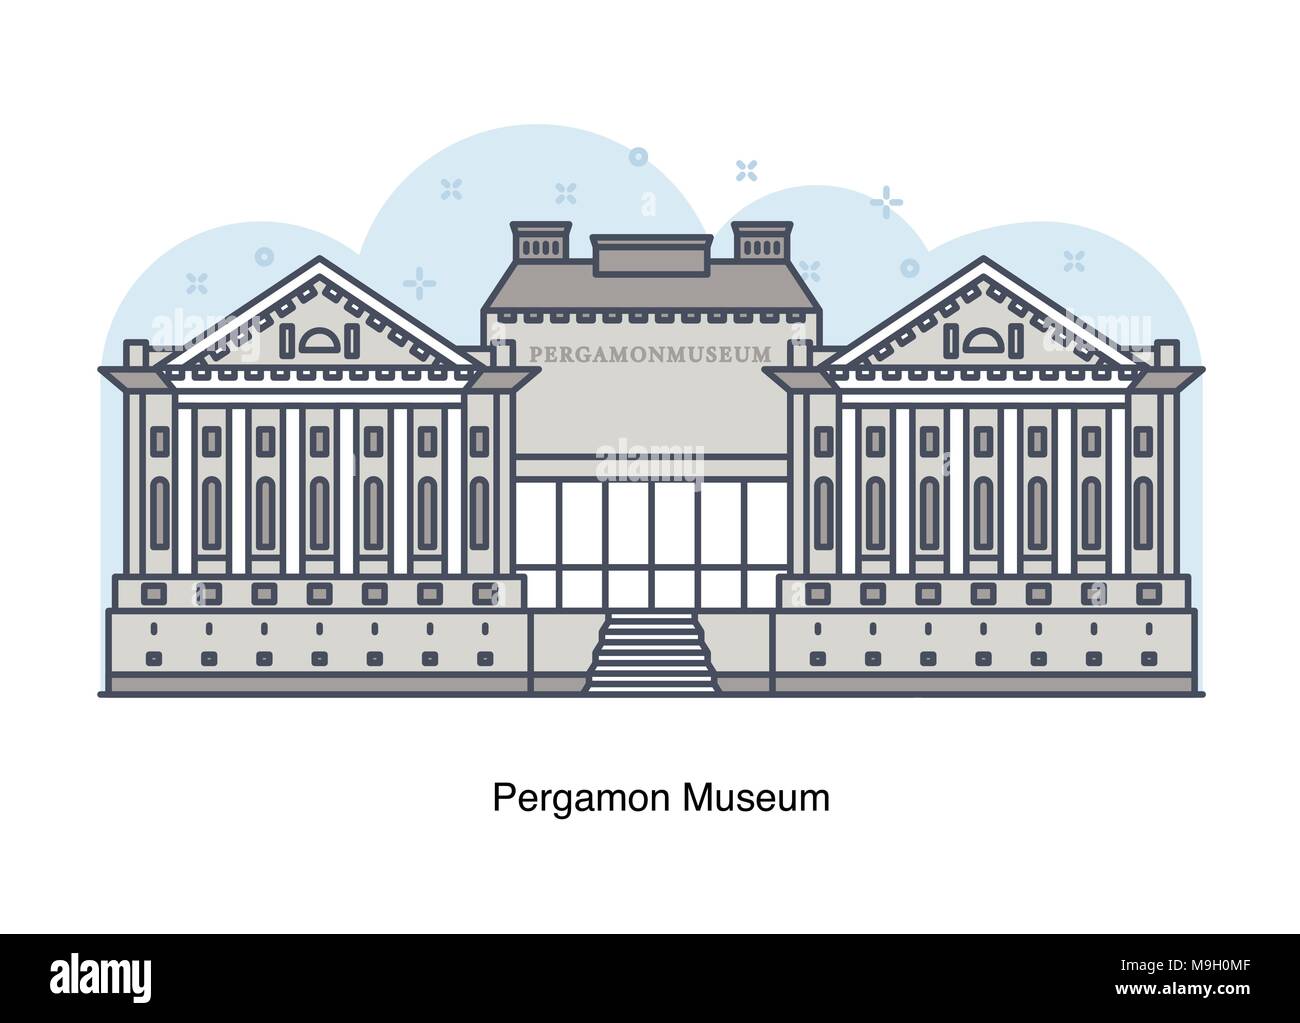 Vektor linie Abbildung von Pergamon Museum, Berlin, Deutschland Stock Vektor